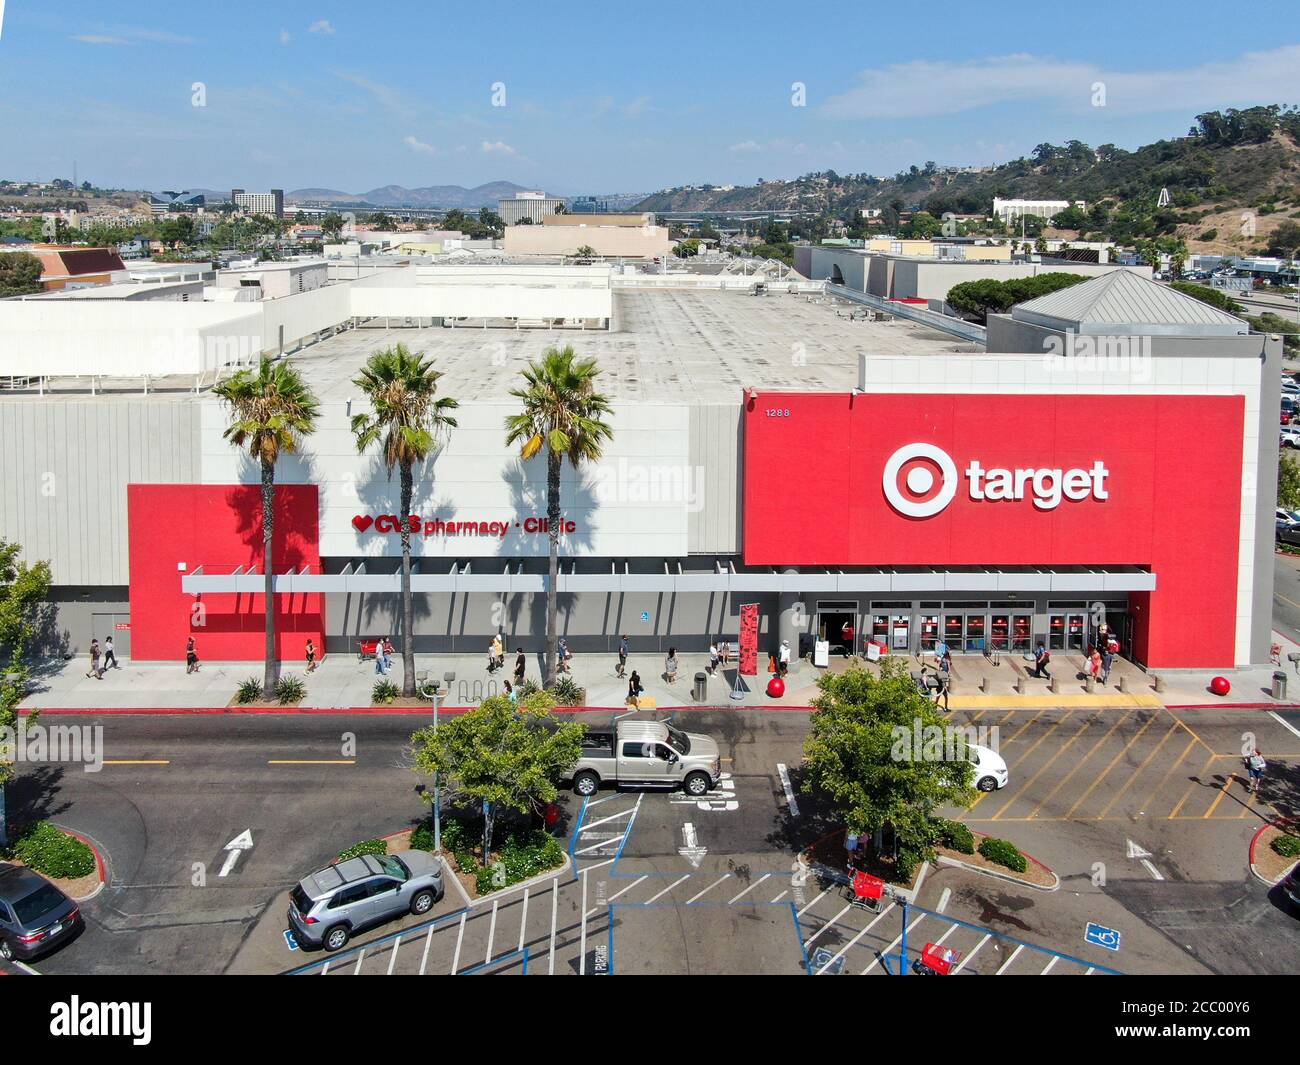 Zielgruppe: Einzelhandelsgeschäft. Target verkauft Haushaltswaren, Bekleidung und Elektronik. San Diego, Kalifornien, USA, 16. August 2020 Stockfoto